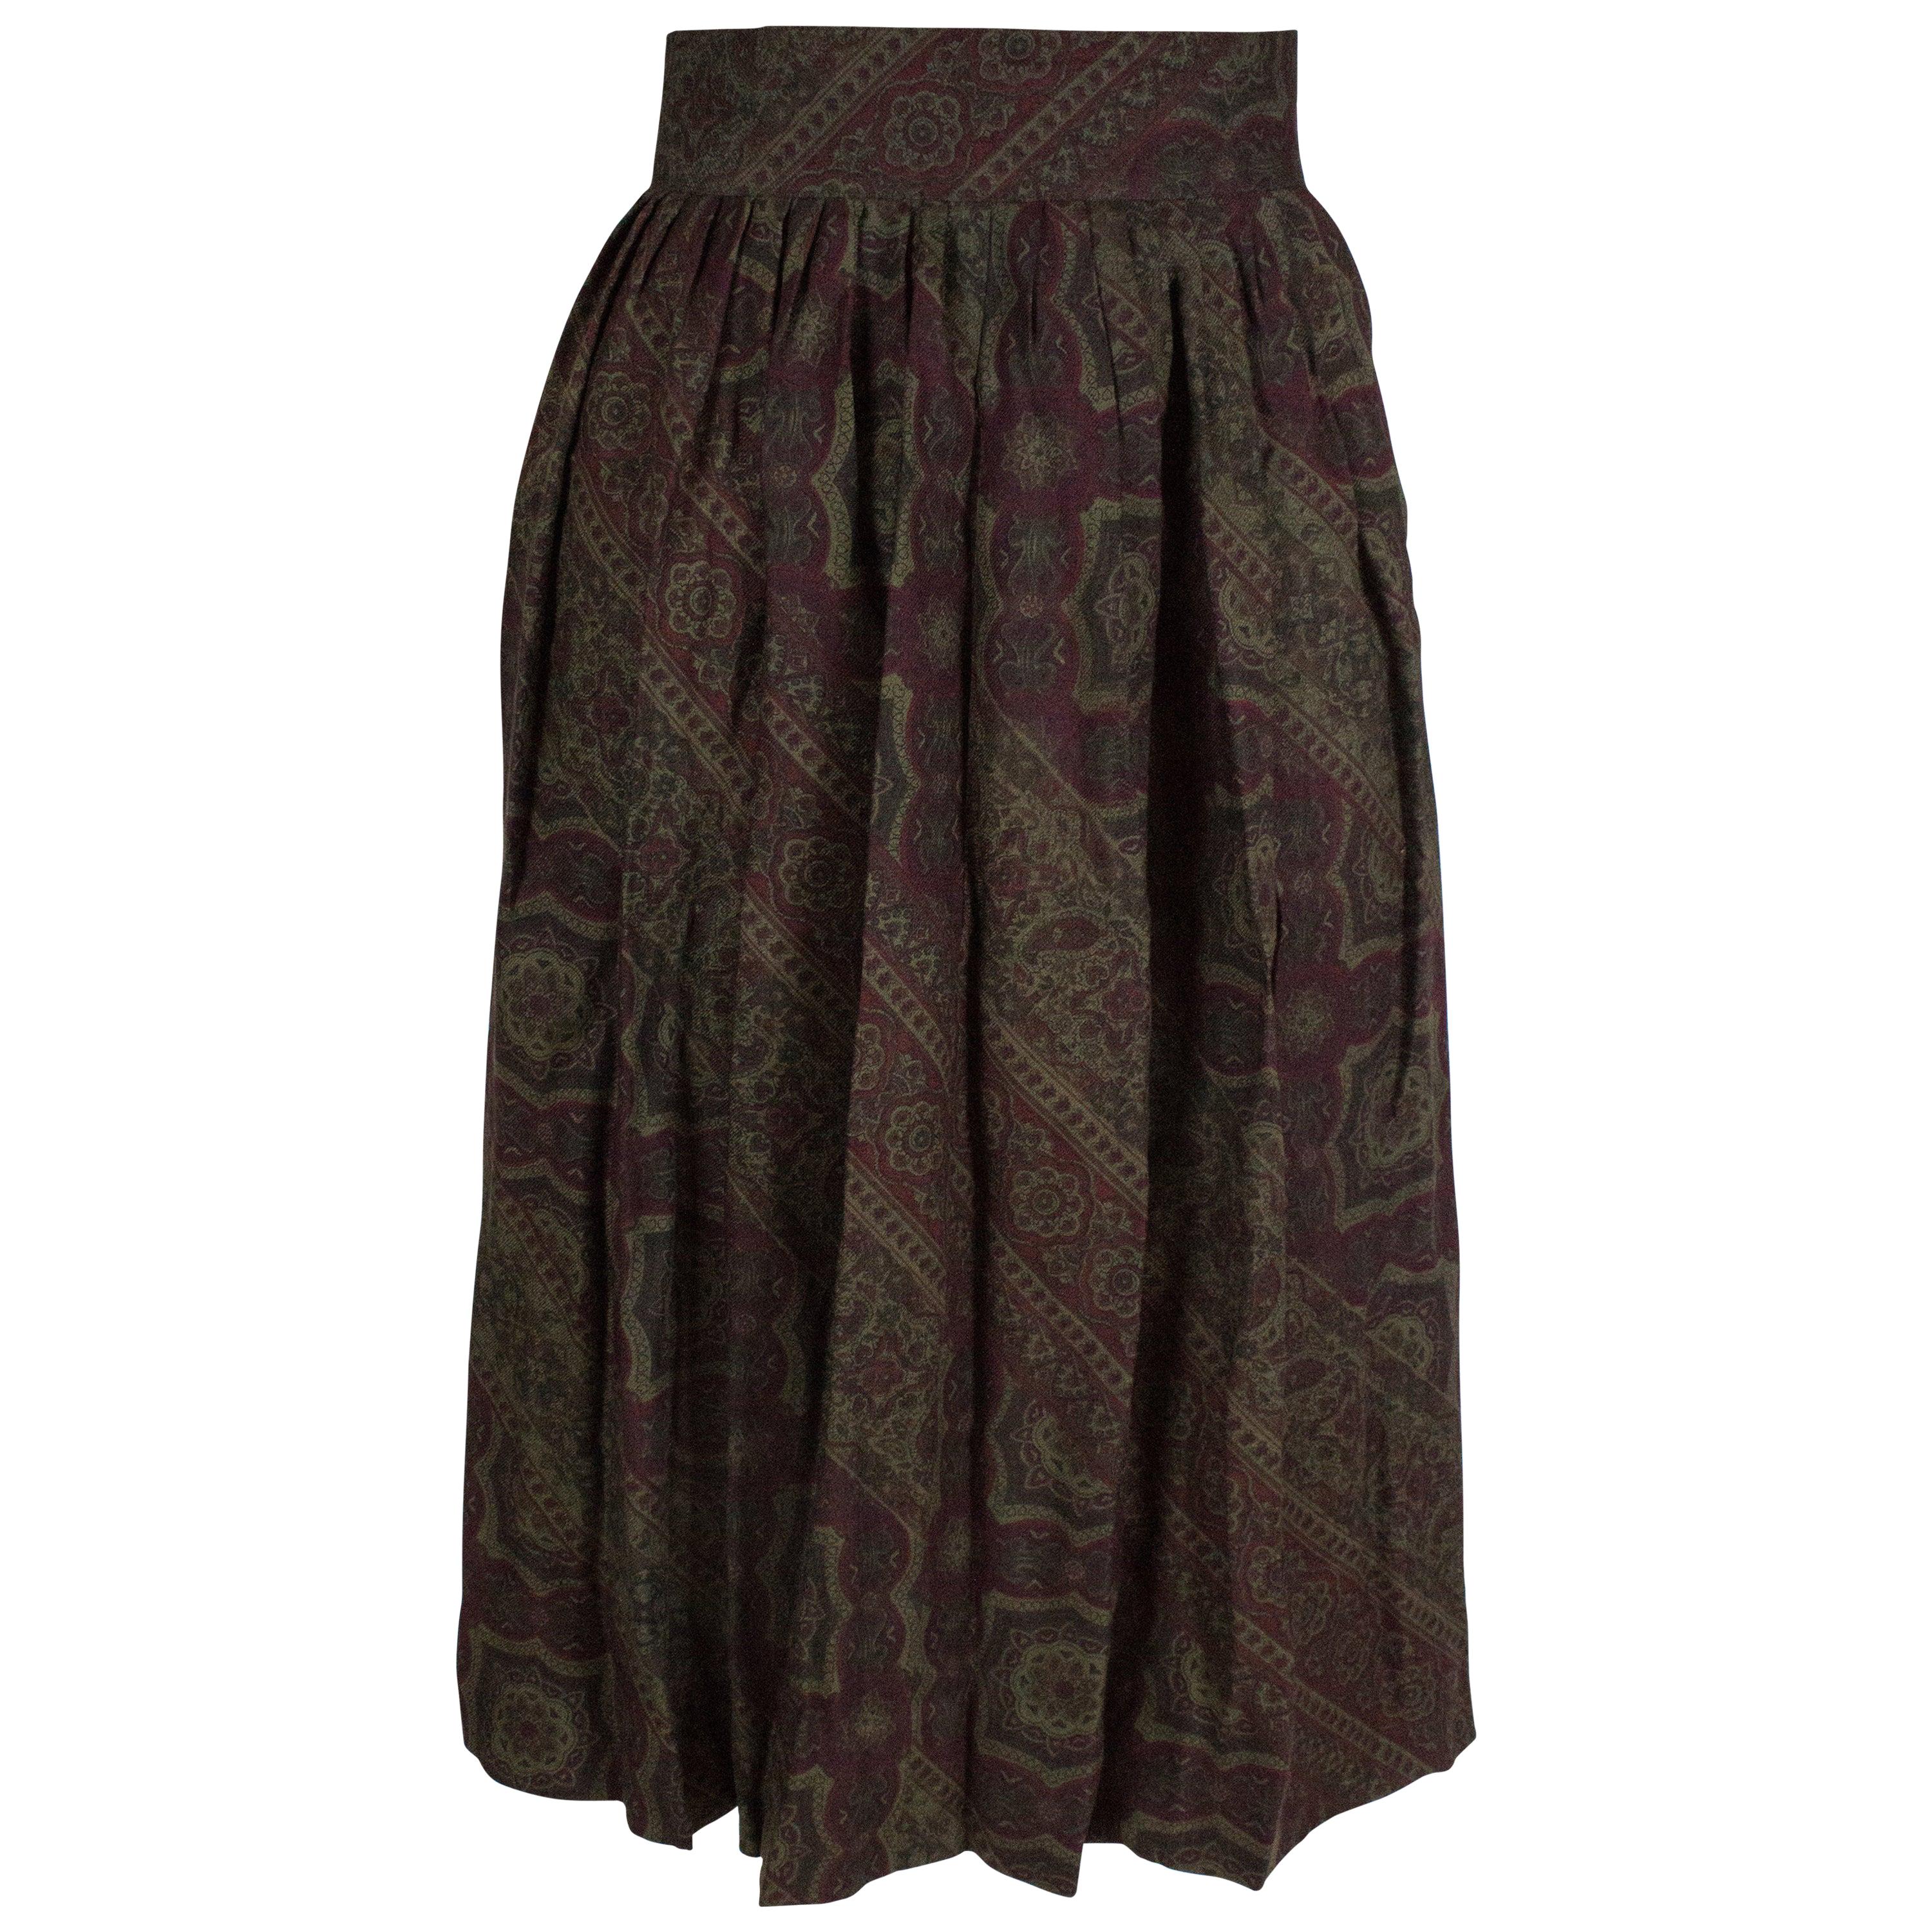 Pancaldi Skirts